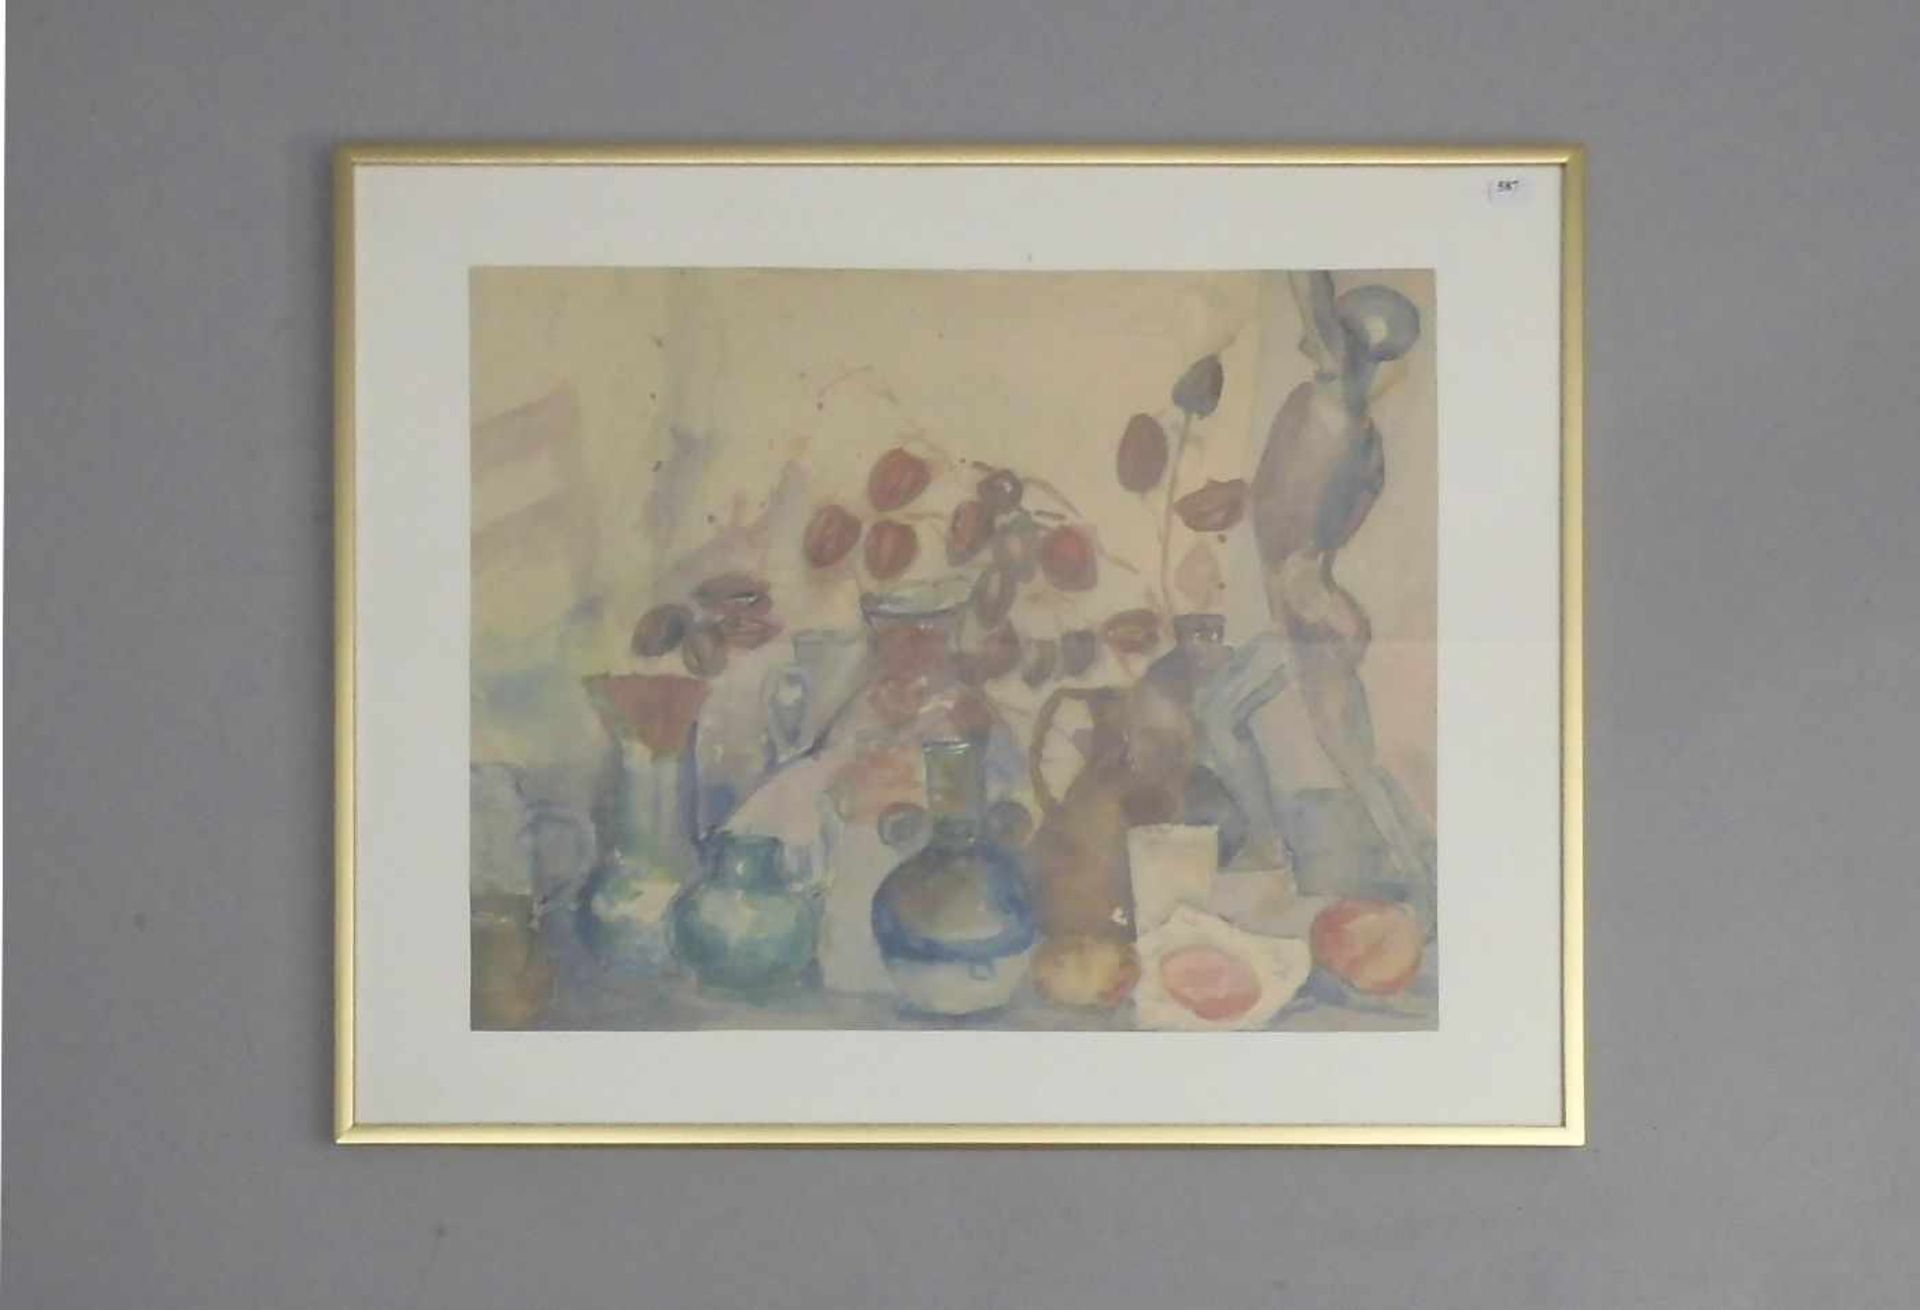 BROEKHUIZEN, HANS (auch Broekhuijsen, 1956-1989), Aquarell: "Stillleben mit Vasen, Früchten und